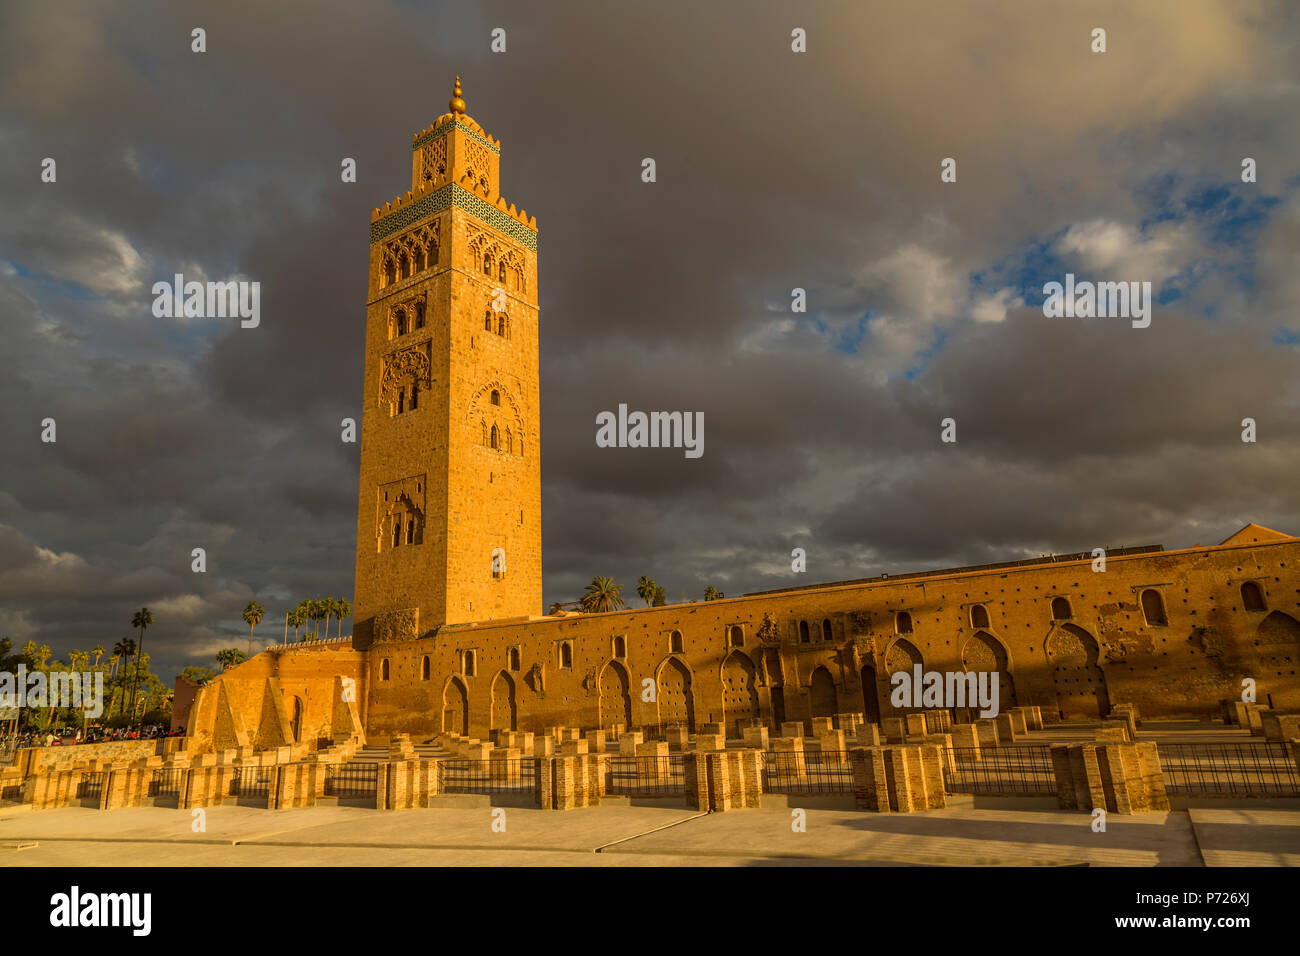 Vista della Moschea di Koutoubia contro il cielo tempestoso, Sito Patrimonio Mondiale dell'UNESCO, Marrakesh (Marrakech), Marocco, Africa Settentrionale, Africa Foto Stock